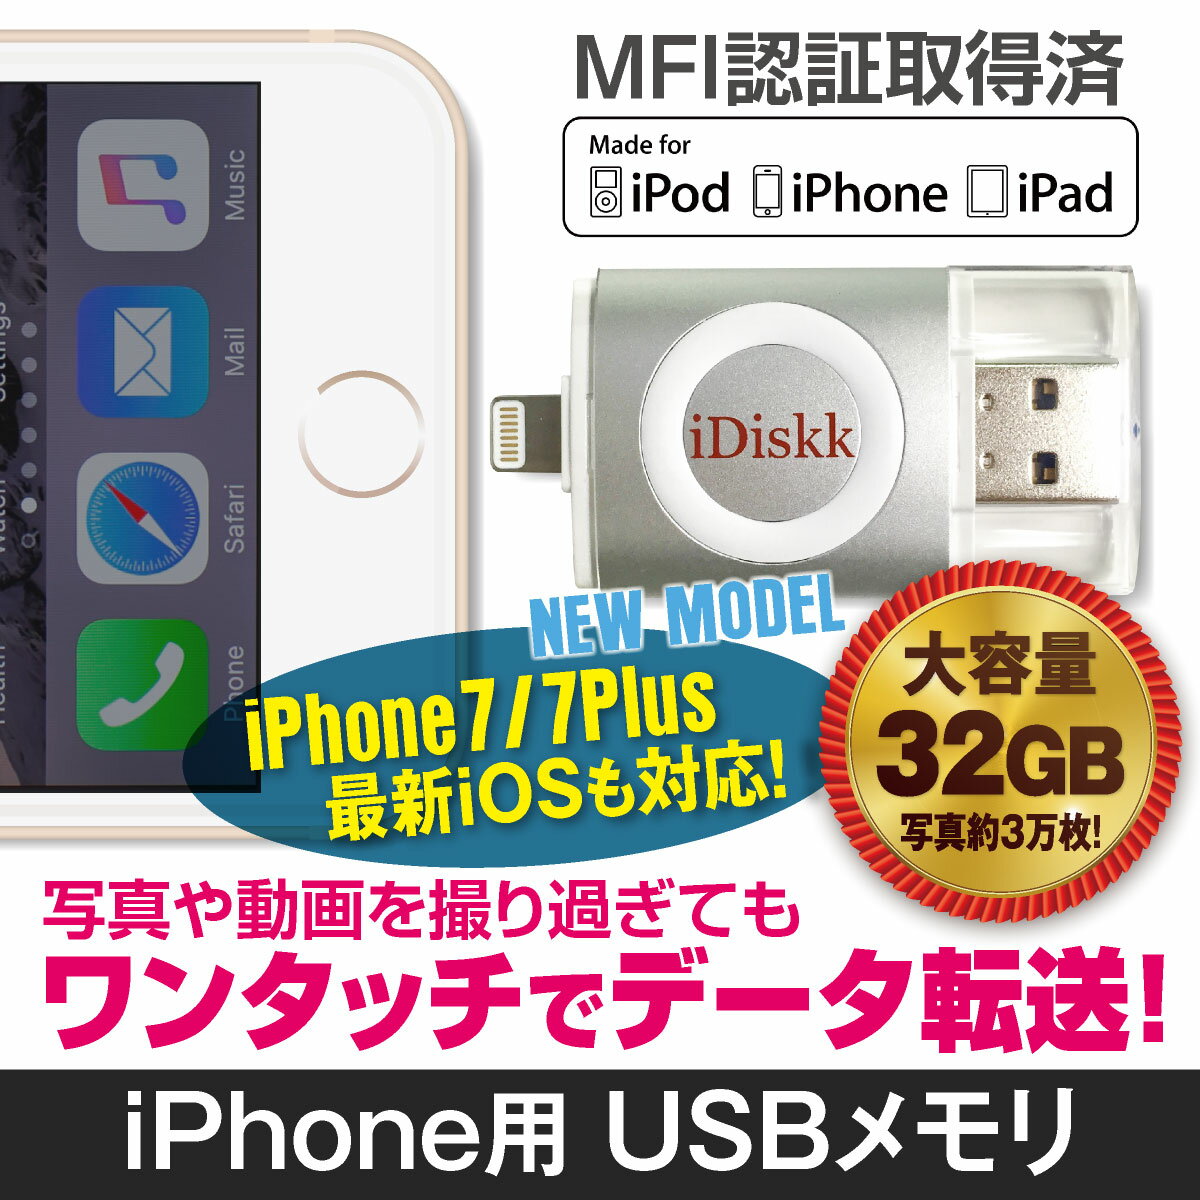 iPhone USBメモリ 32GB メモリ MFI認証取得 USB iPhone7 iPhone6 iDiskk idrive-32gb